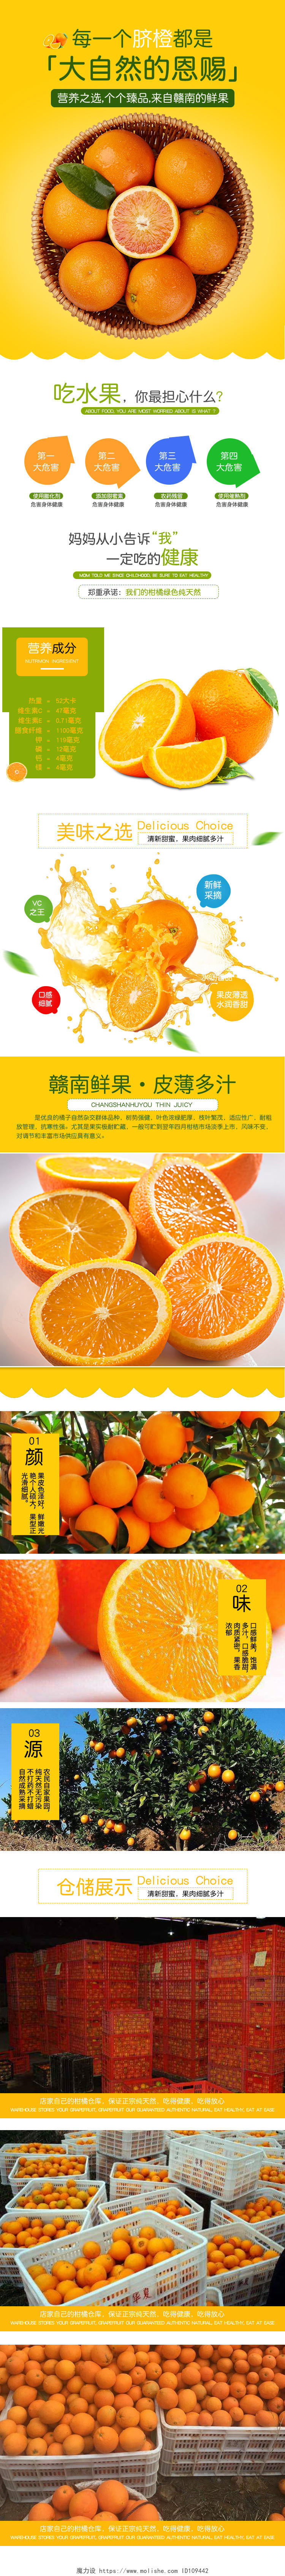 橙色简约赣南鲜果皮薄多汁纯天然无污染脐橙橙子水果通用详情页